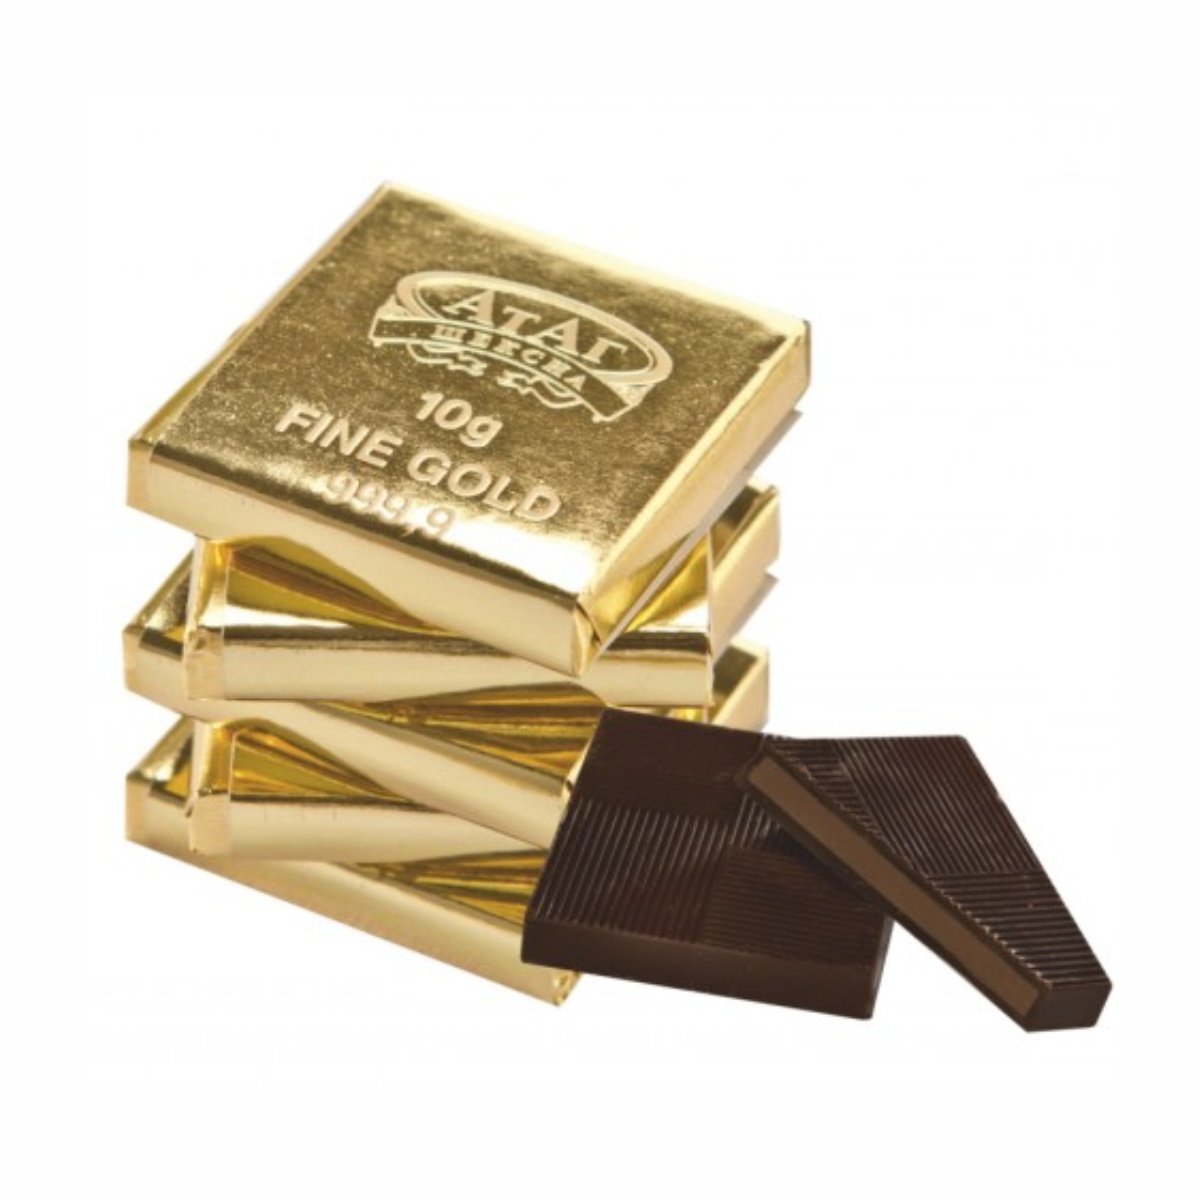 10 гр золота. Конфеты десять грамм золота АТАГ. АТАГ 10 грамм золота. 10 Грамм золота (конфеты) 3 кг /АТАГ/. Шоколад АТАГ Fine Gold.